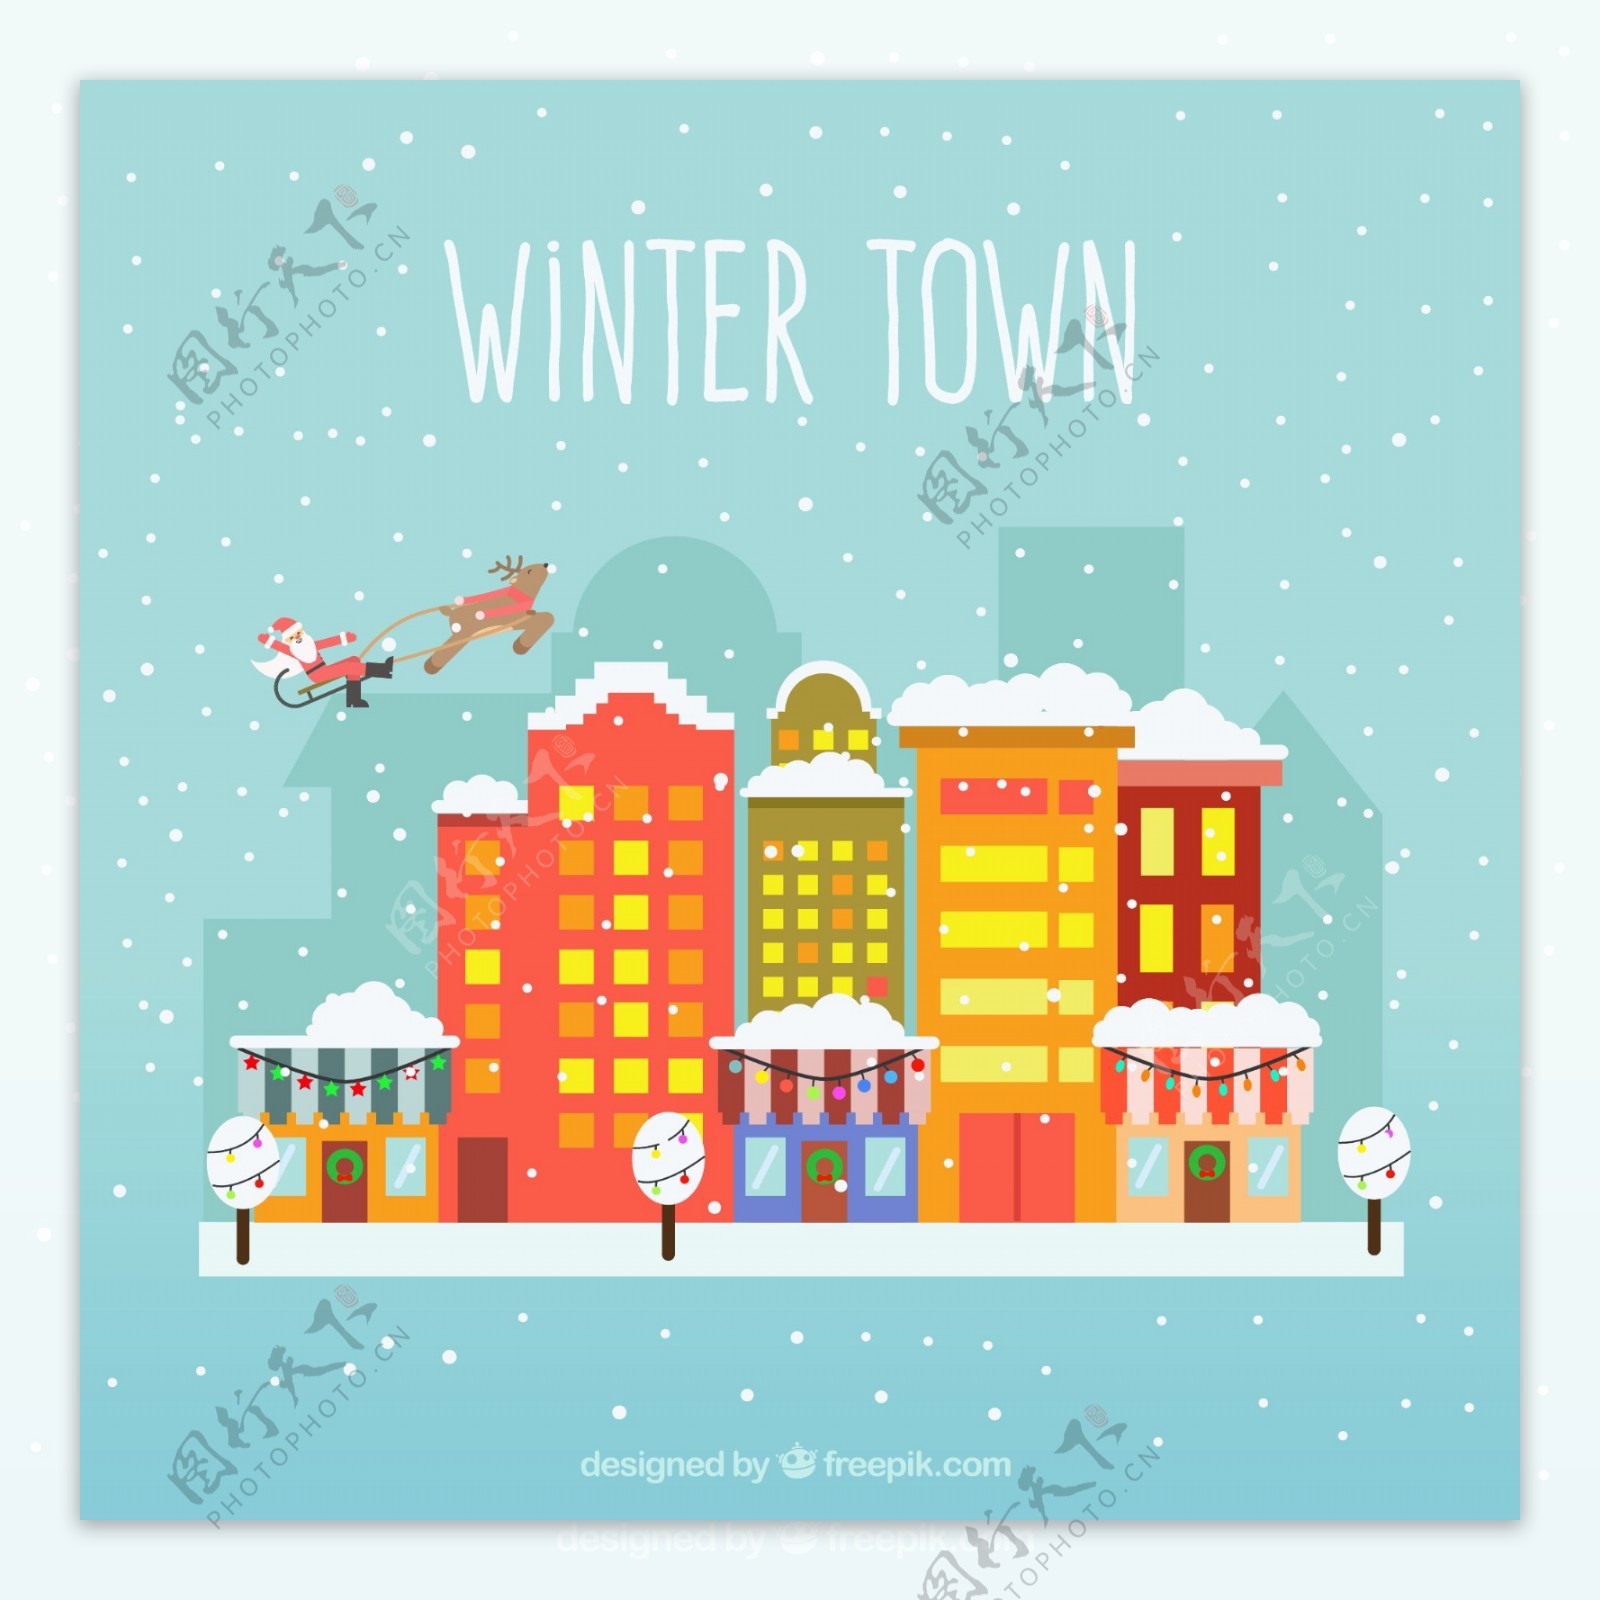 冬季城镇色彩风格